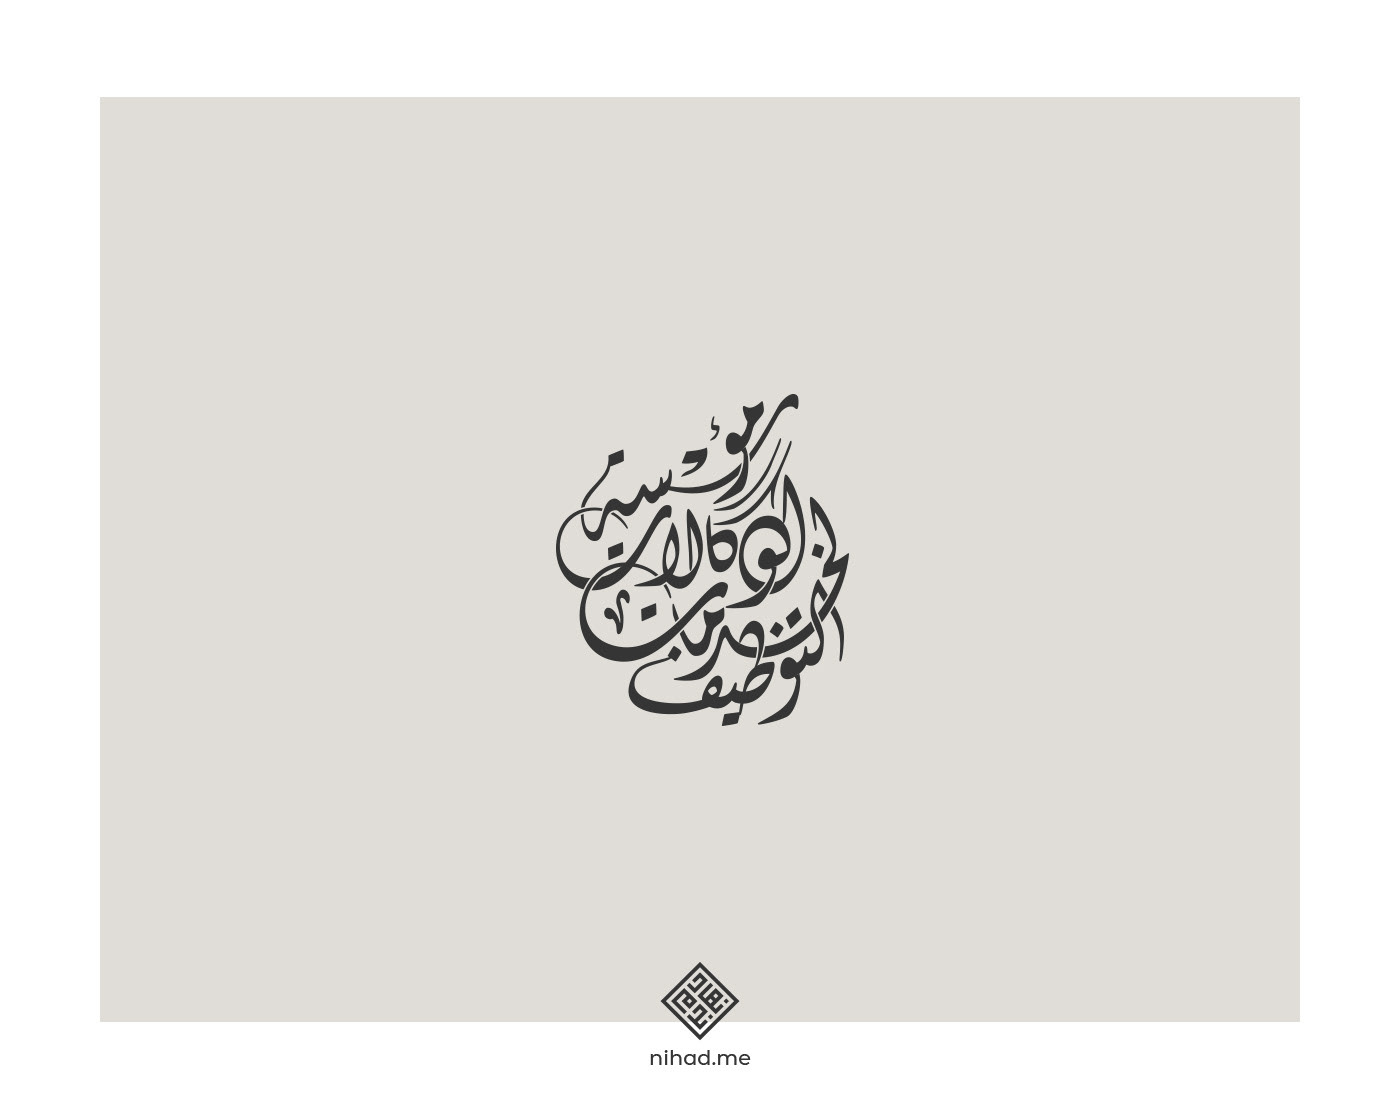 Nihad Nadam Creative Portfolio - Arabic Logofolio 1